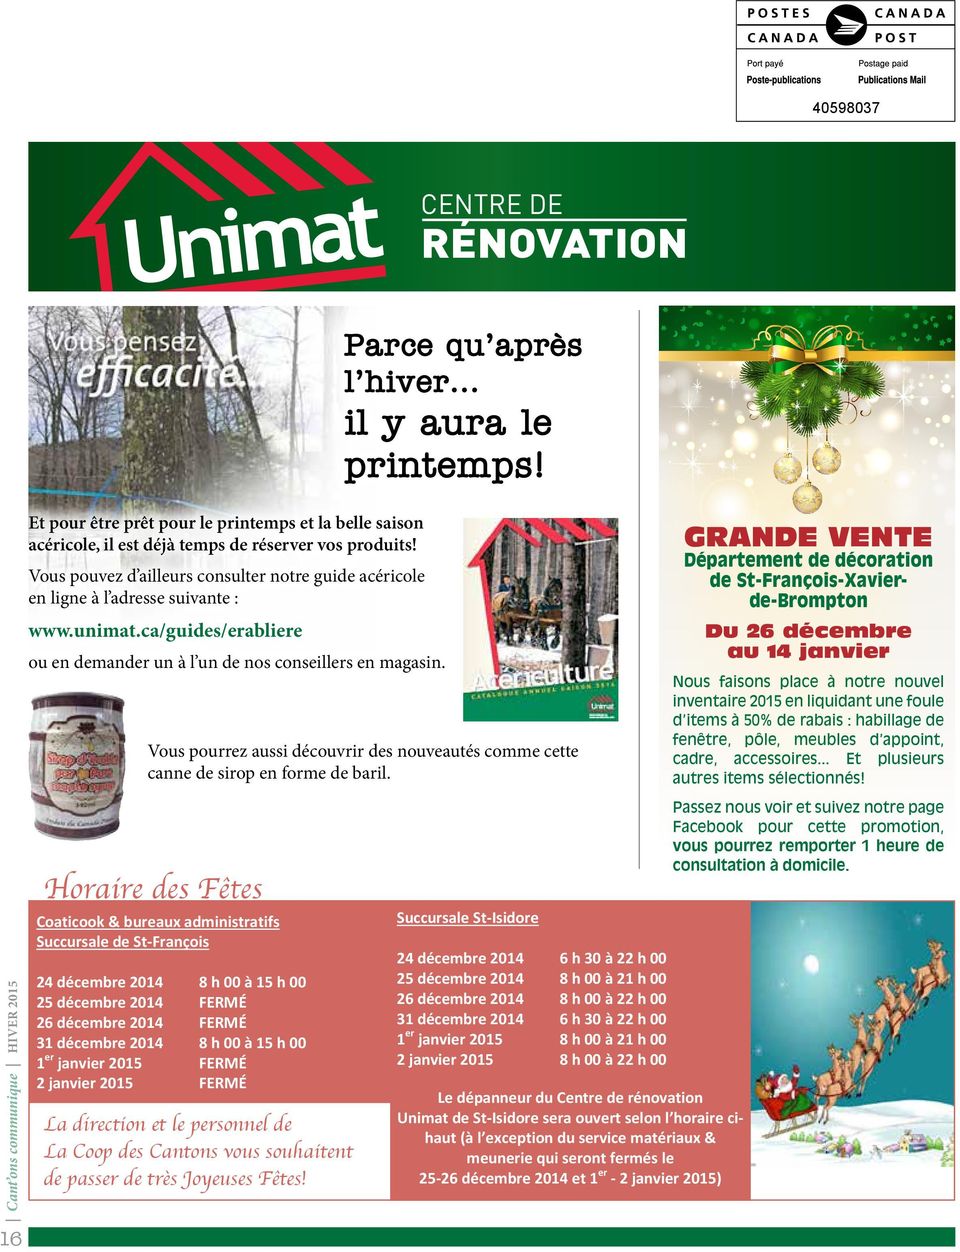 GRANDE VENTE Département de décoration de St-François-Xavierde-Brompton Vous pouvez d ailleurs consulter notre guide acéricole en ligne à l adresse suivante : www.unimat.